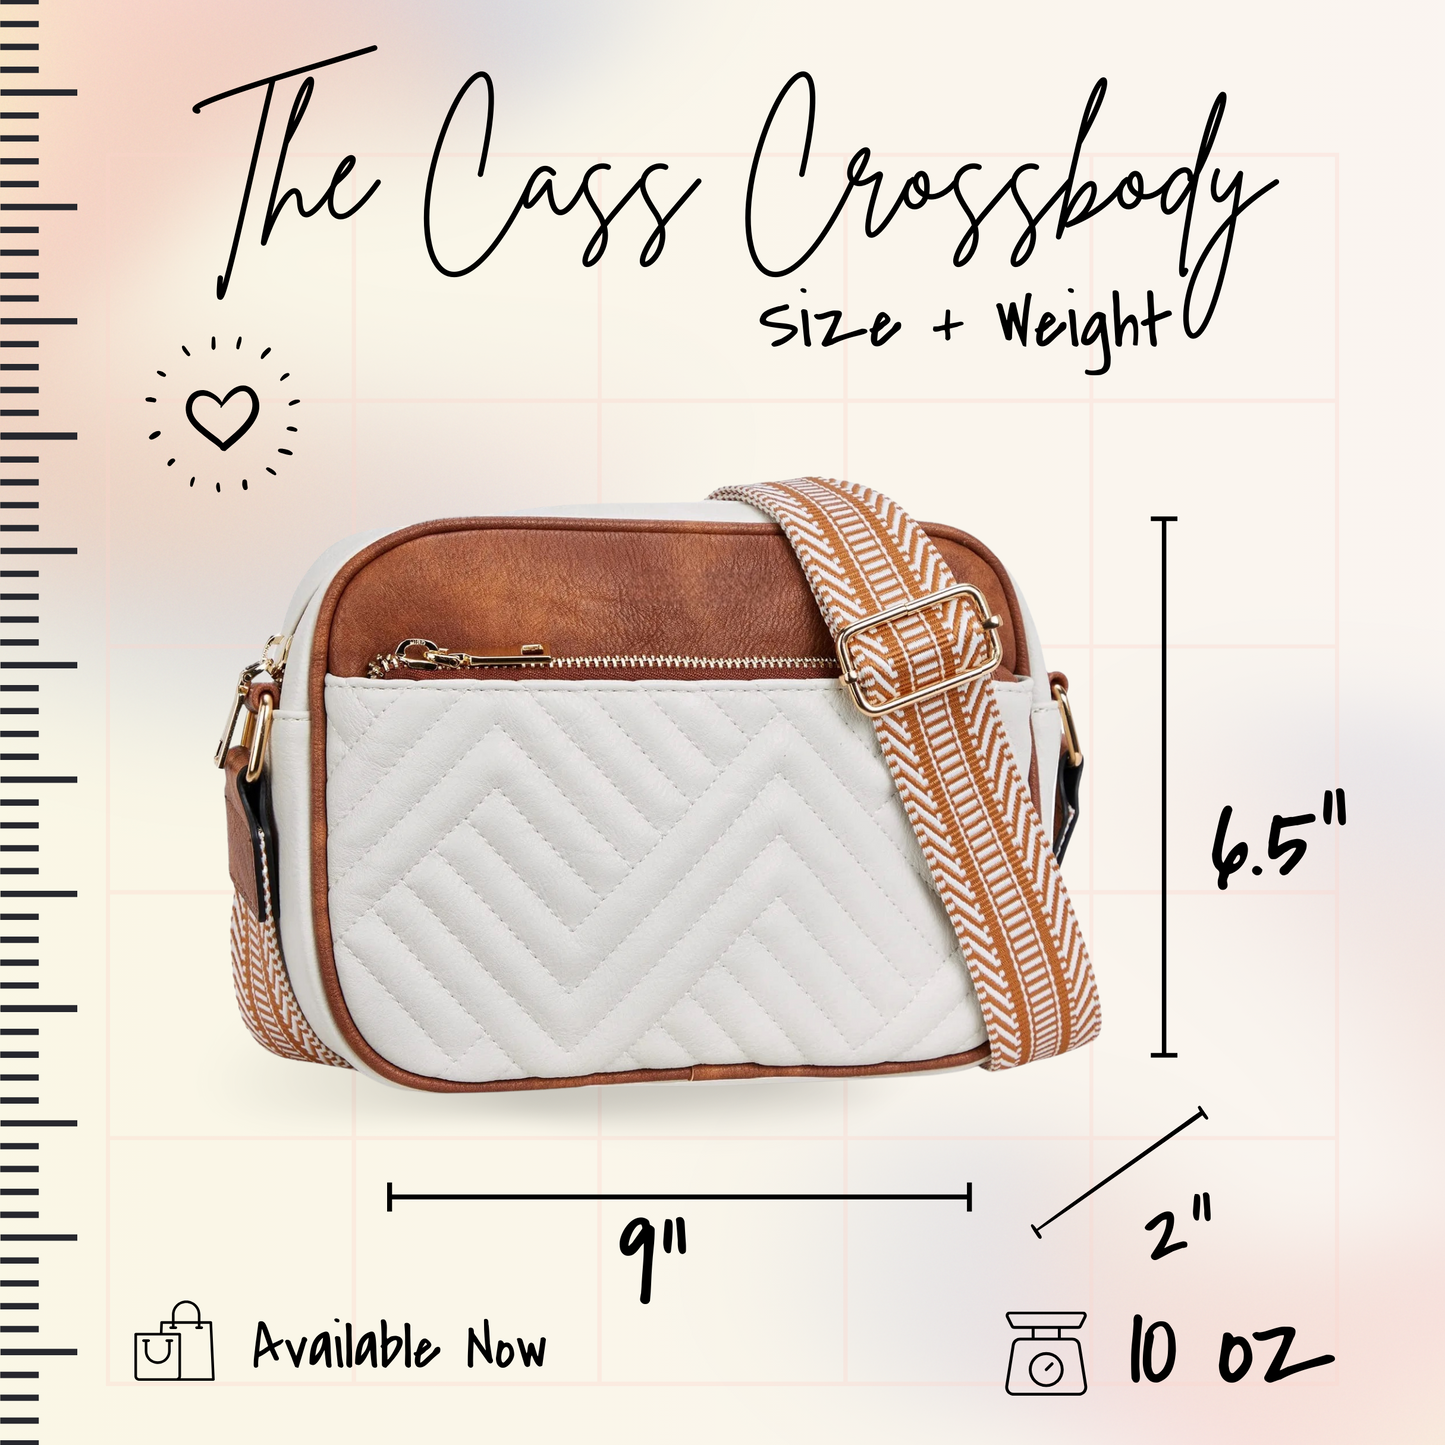 Cass Crossbody Bag